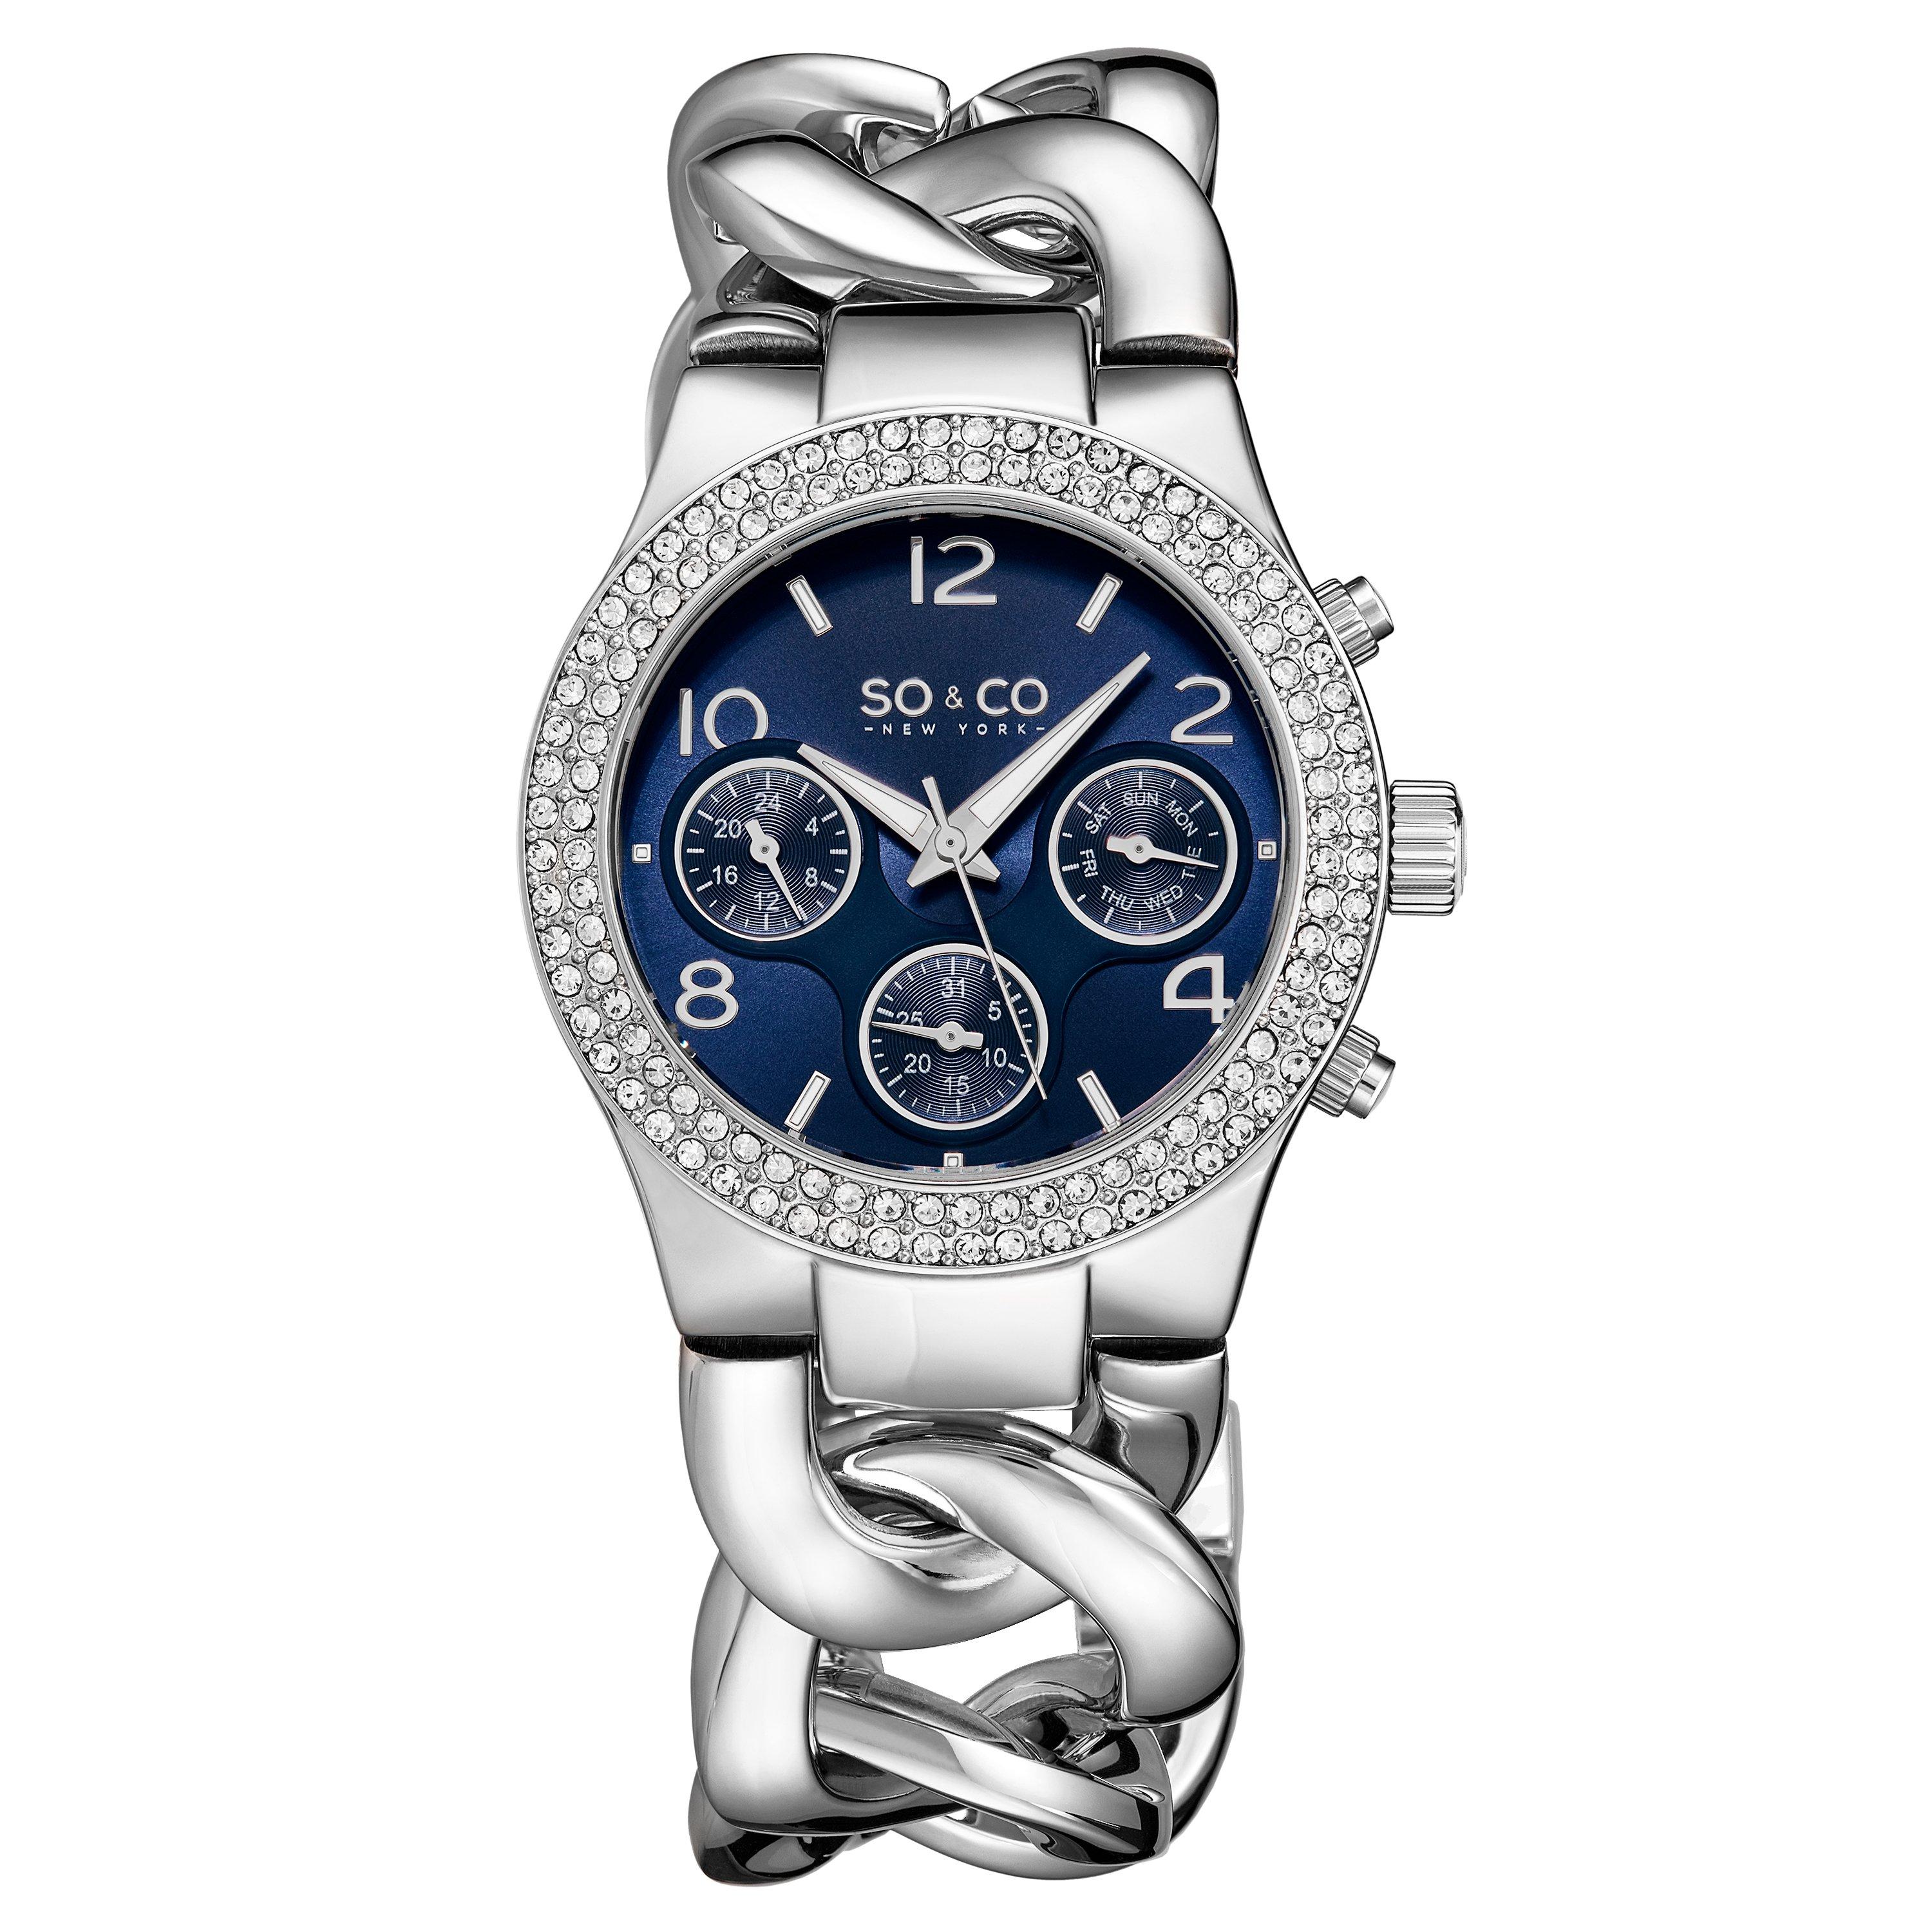 Часы Chelsea 5013A, 38 мм, с кристаллами и шипованной цепочкой, с матовым циферблатом SO&CO, синий часы masonic подарочный набор с бумажником мужские кварцевые часы с циферблатом мужской бумажник фримана лучшие оригинальные подарочные ко